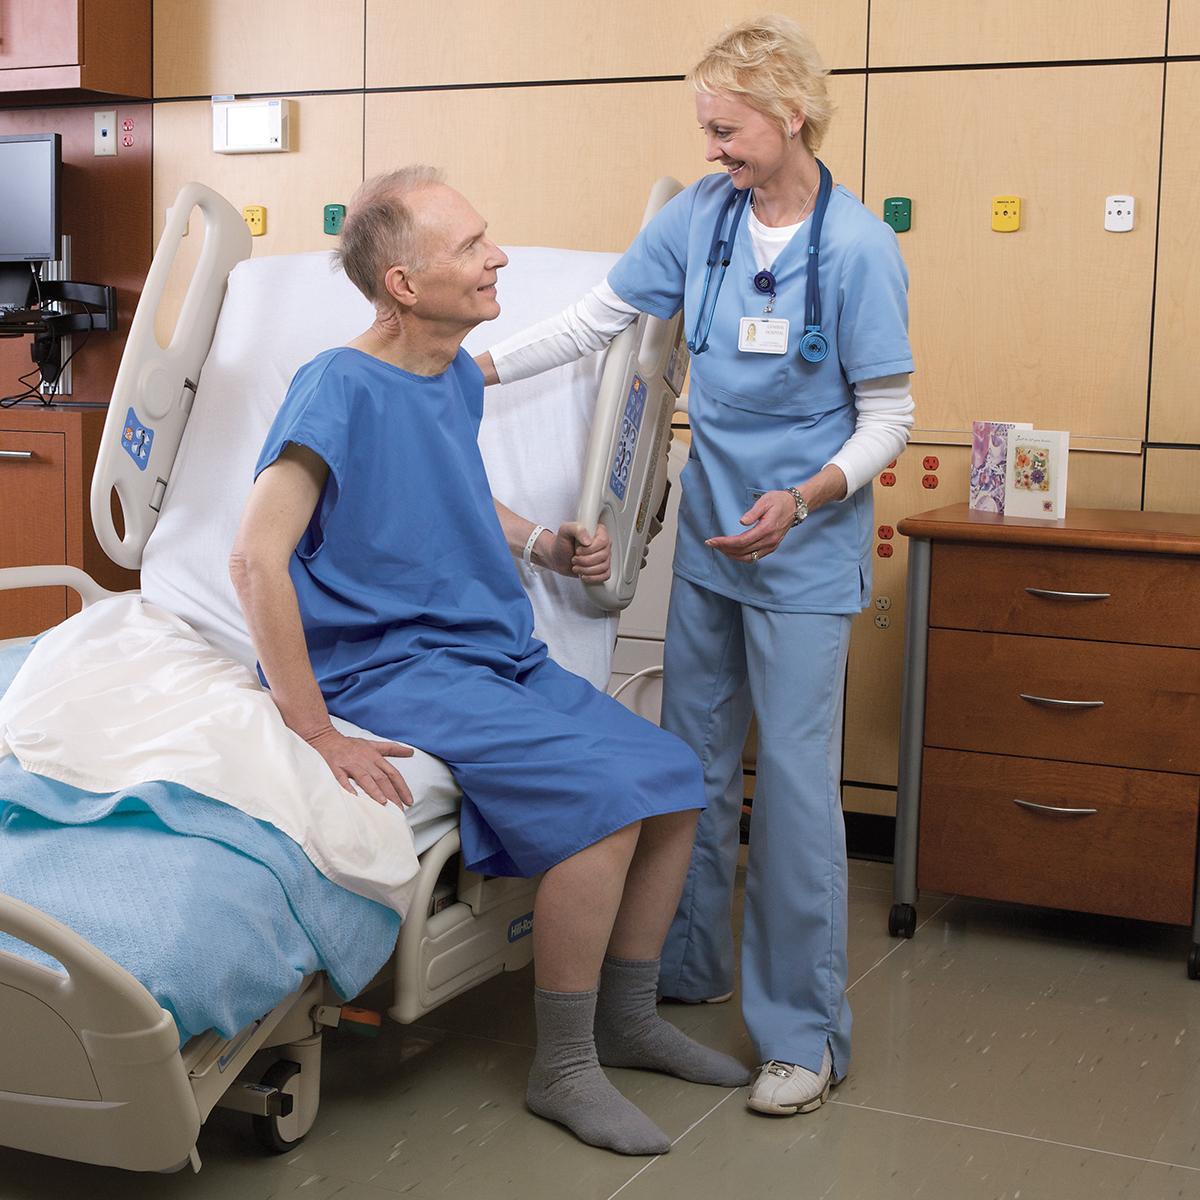 Un patient âgé passe de la position allongée à assise sur un lit médico-chirurgical VersaCare. Une clinicienne se tient debout au chevet du patient et l’aide avec sa main sur son épaule.